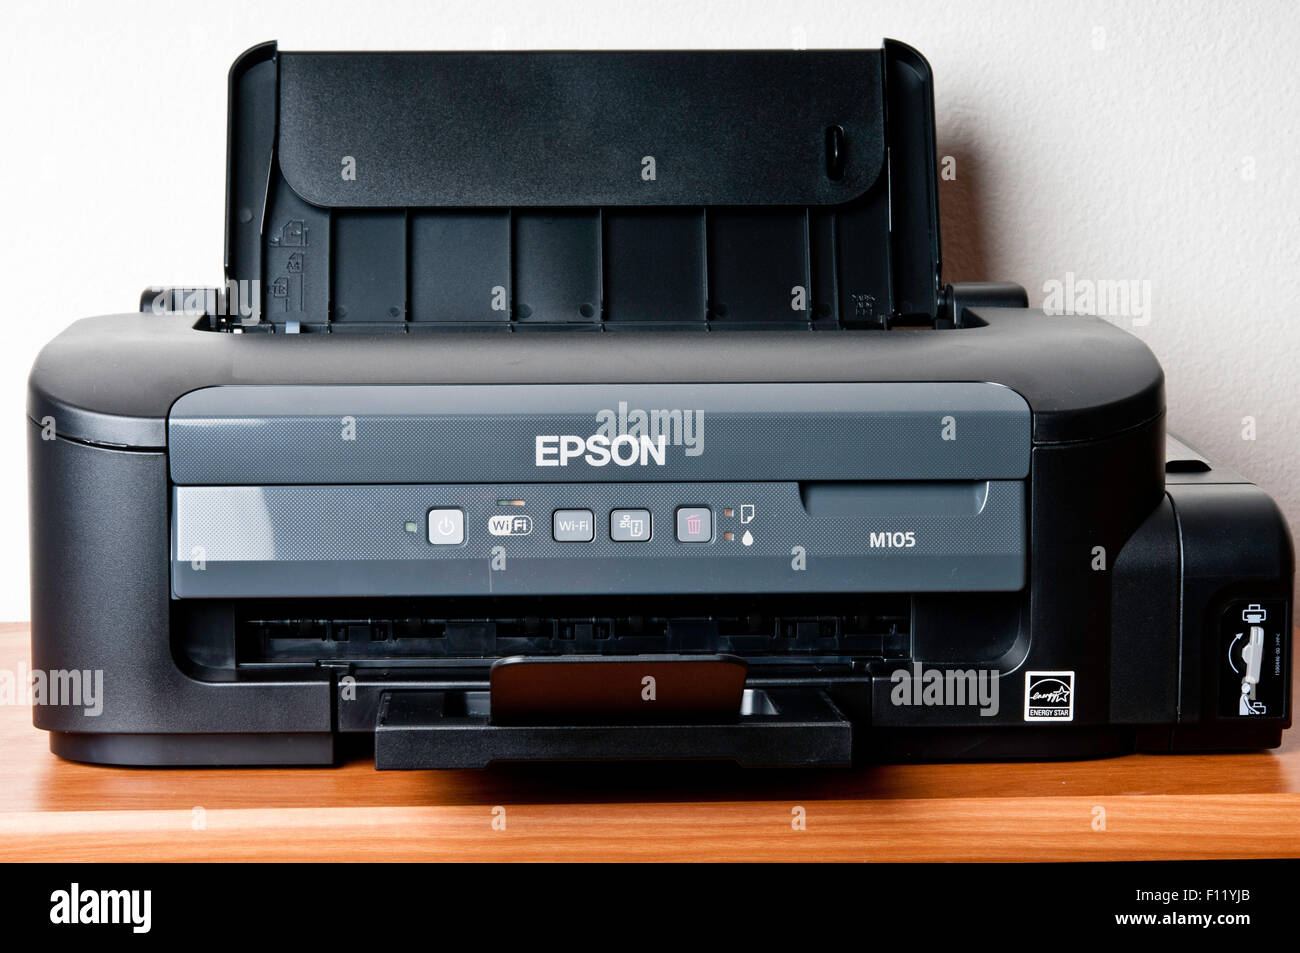 Epson M105 monochrome printer Stock Photo - Alamy